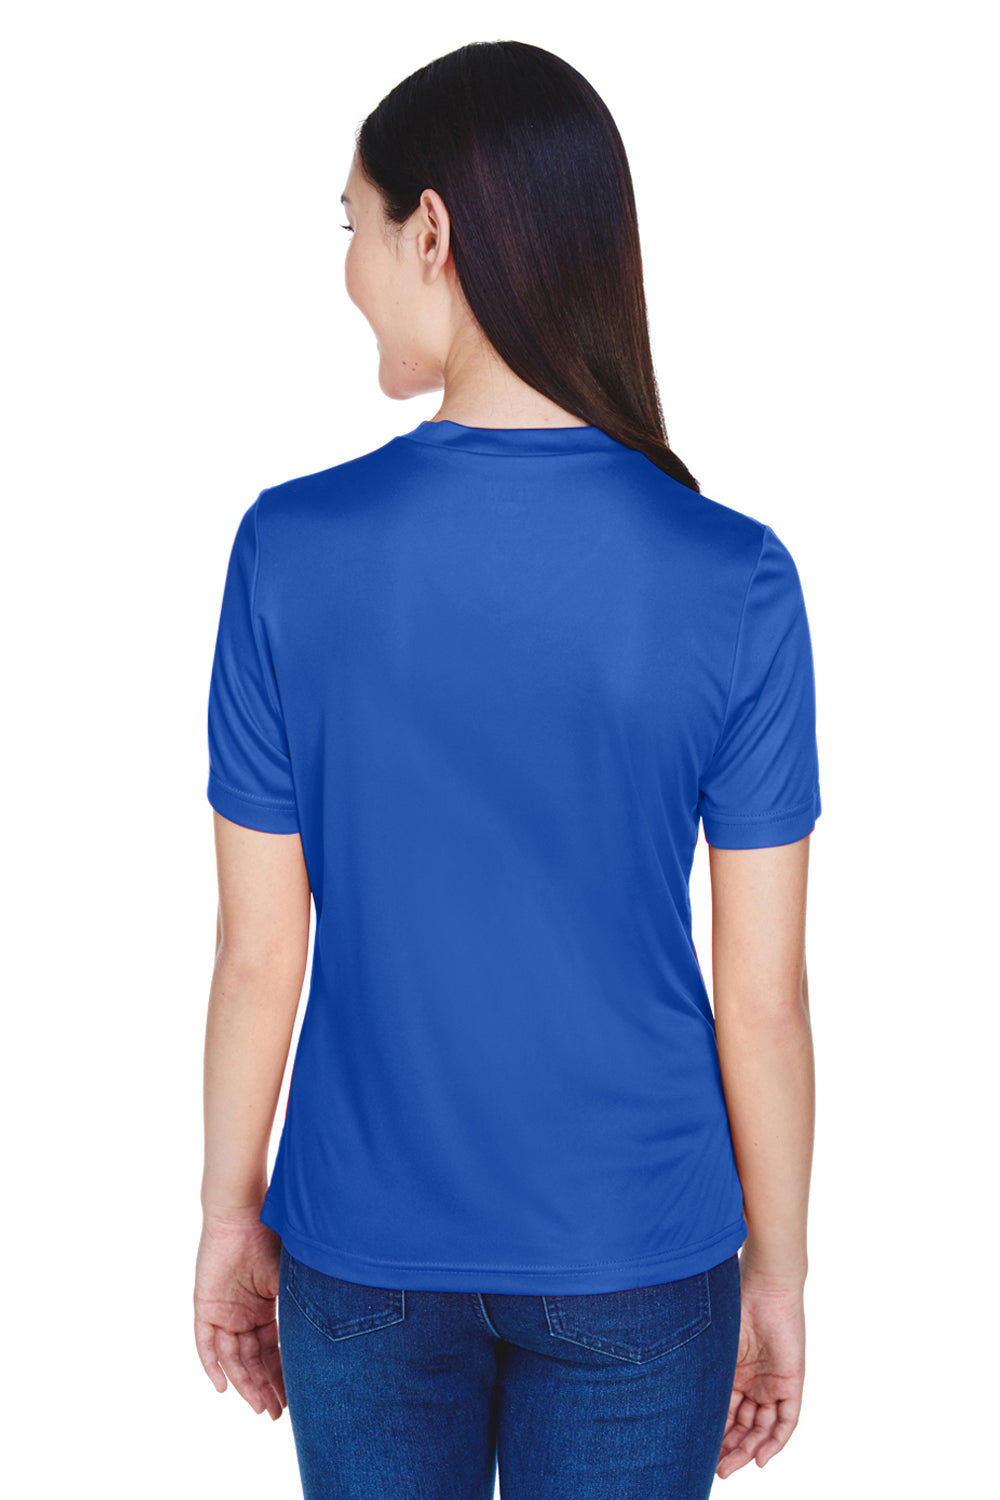 Team 365 TT11W Womens Zone Performance Moisture Wicking Short Sleeve V-Neck T-Shirt Royal Blue Back